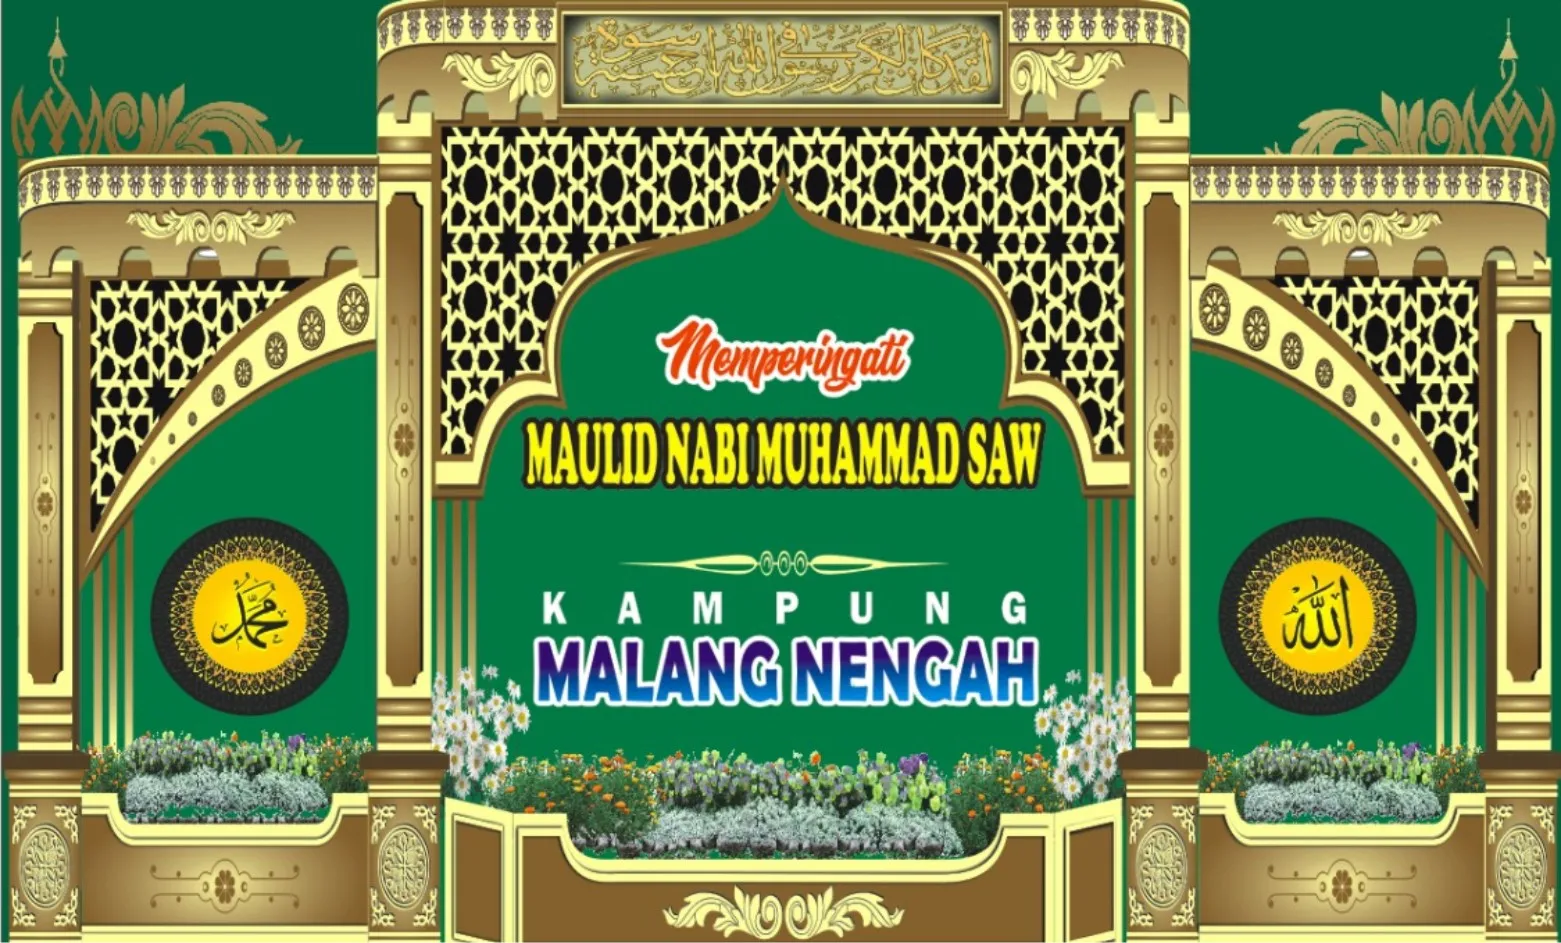 Hãy ngắm nhìn bức ảnh Spanduk Ramadhan 1443H/2002 thiết kế đẹp mắt và rực rỡ! Với sự kết hợp của những màu sắc ấm áp và những họa tiết truyền thống của người Hồi giáo, bức ảnh này sẽ xua tan bất cứ căng thẳng hay lo lắng nào trong tâm hồn của bạn.